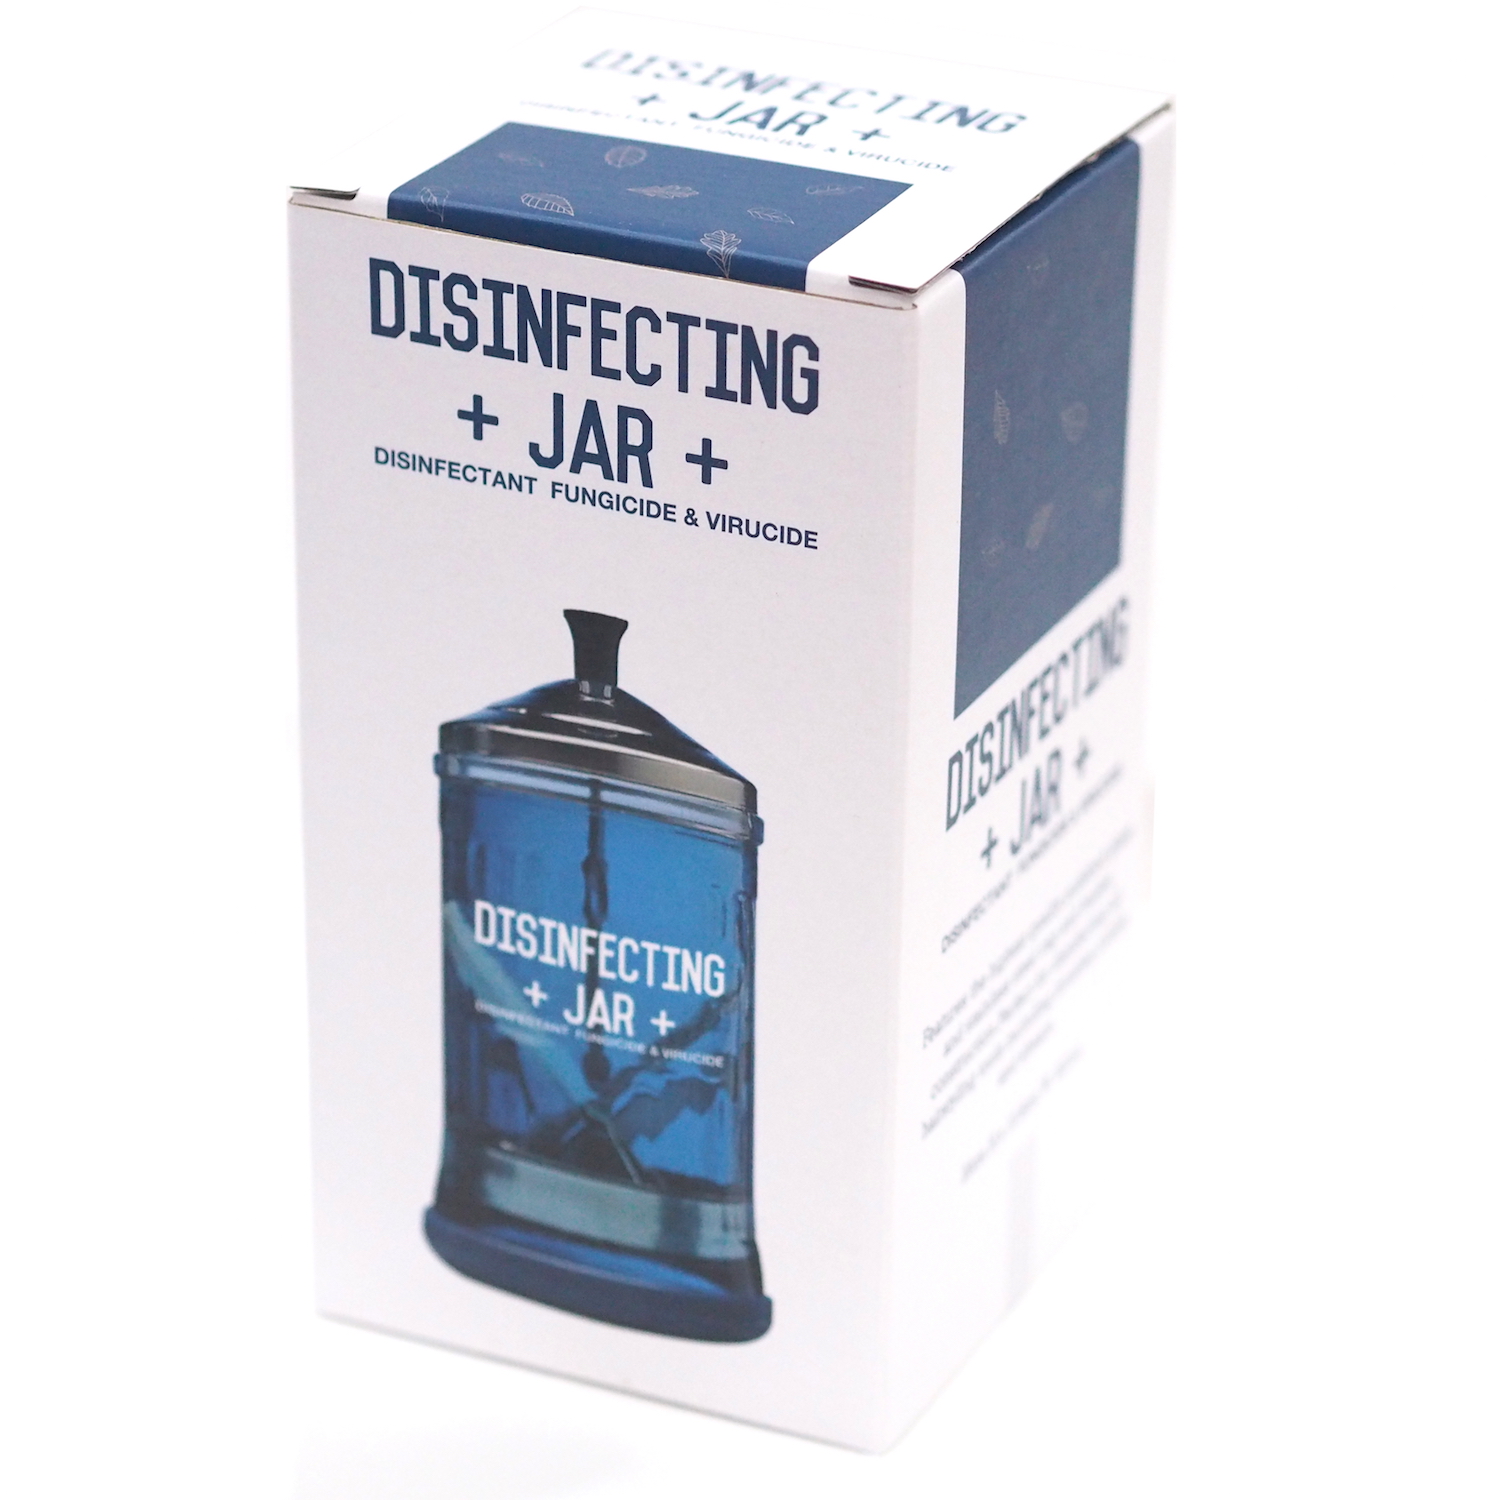 ขวดแก้วสำหรับแช่ทำความสะอาดอุปกรณ์ Disinfecting Jar  621 ml.